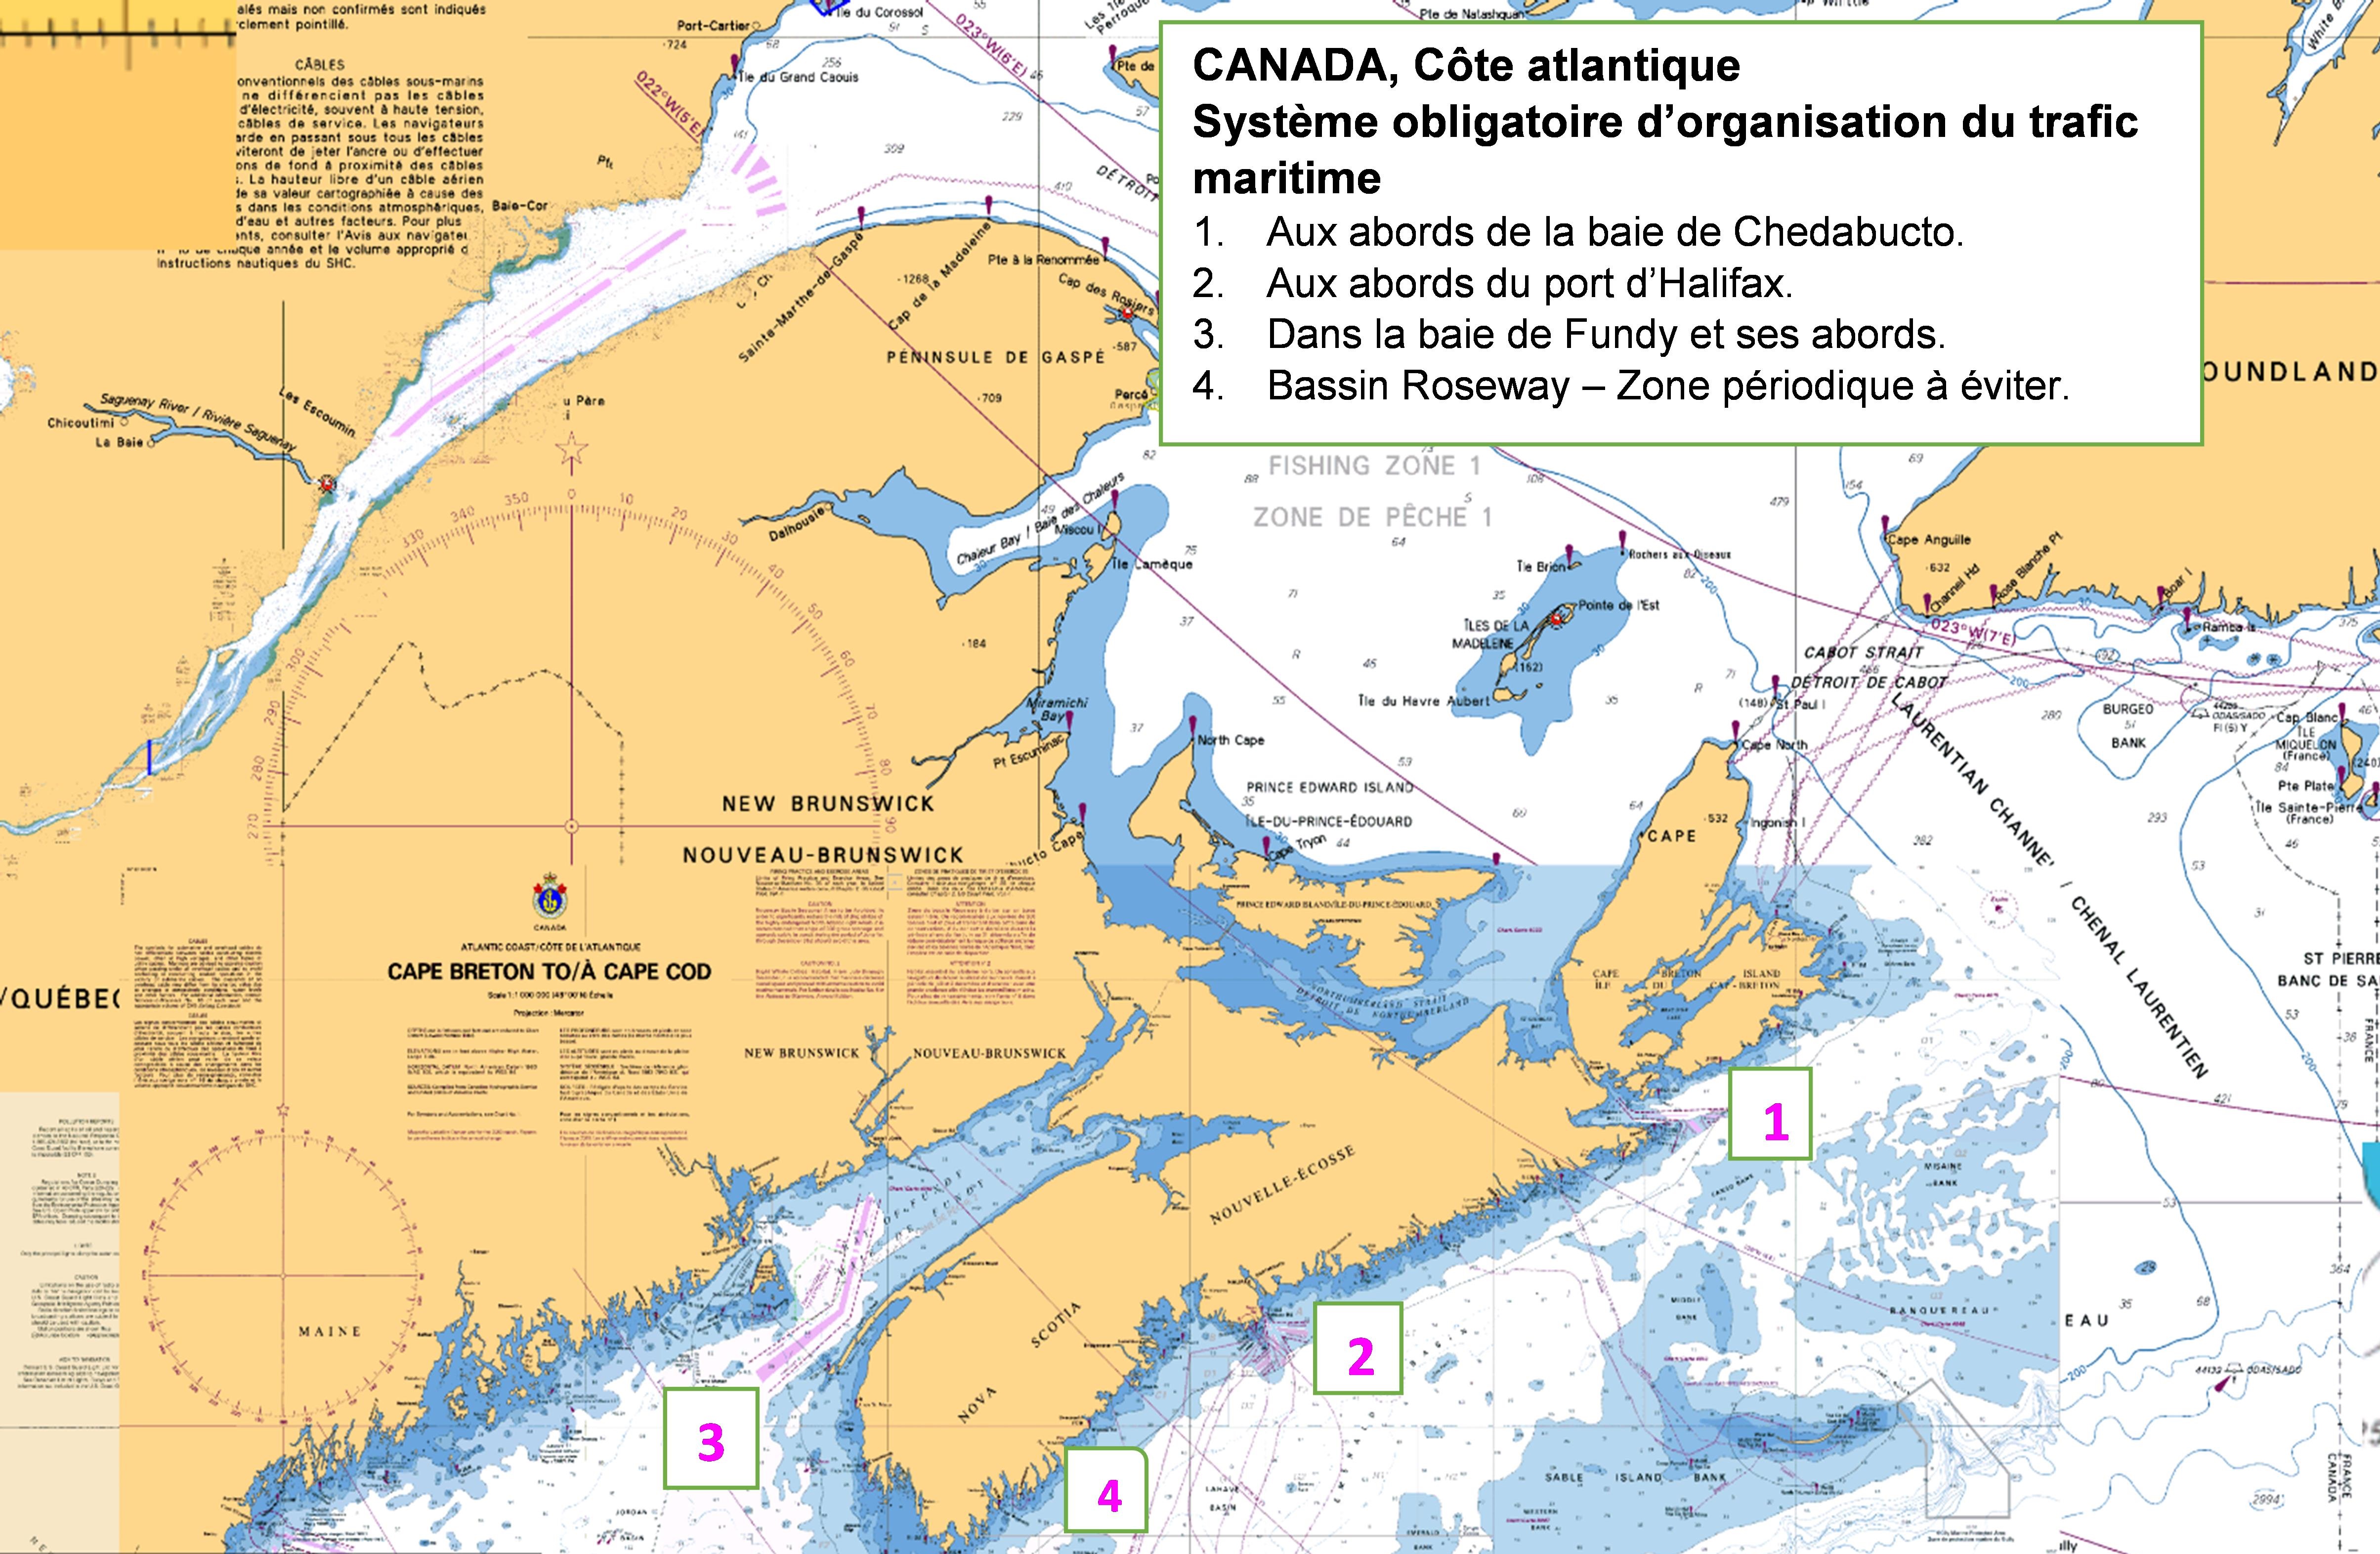 Adoption de l'OMI - Système de routage canadien obligatoire – TSS de la côte atlantique